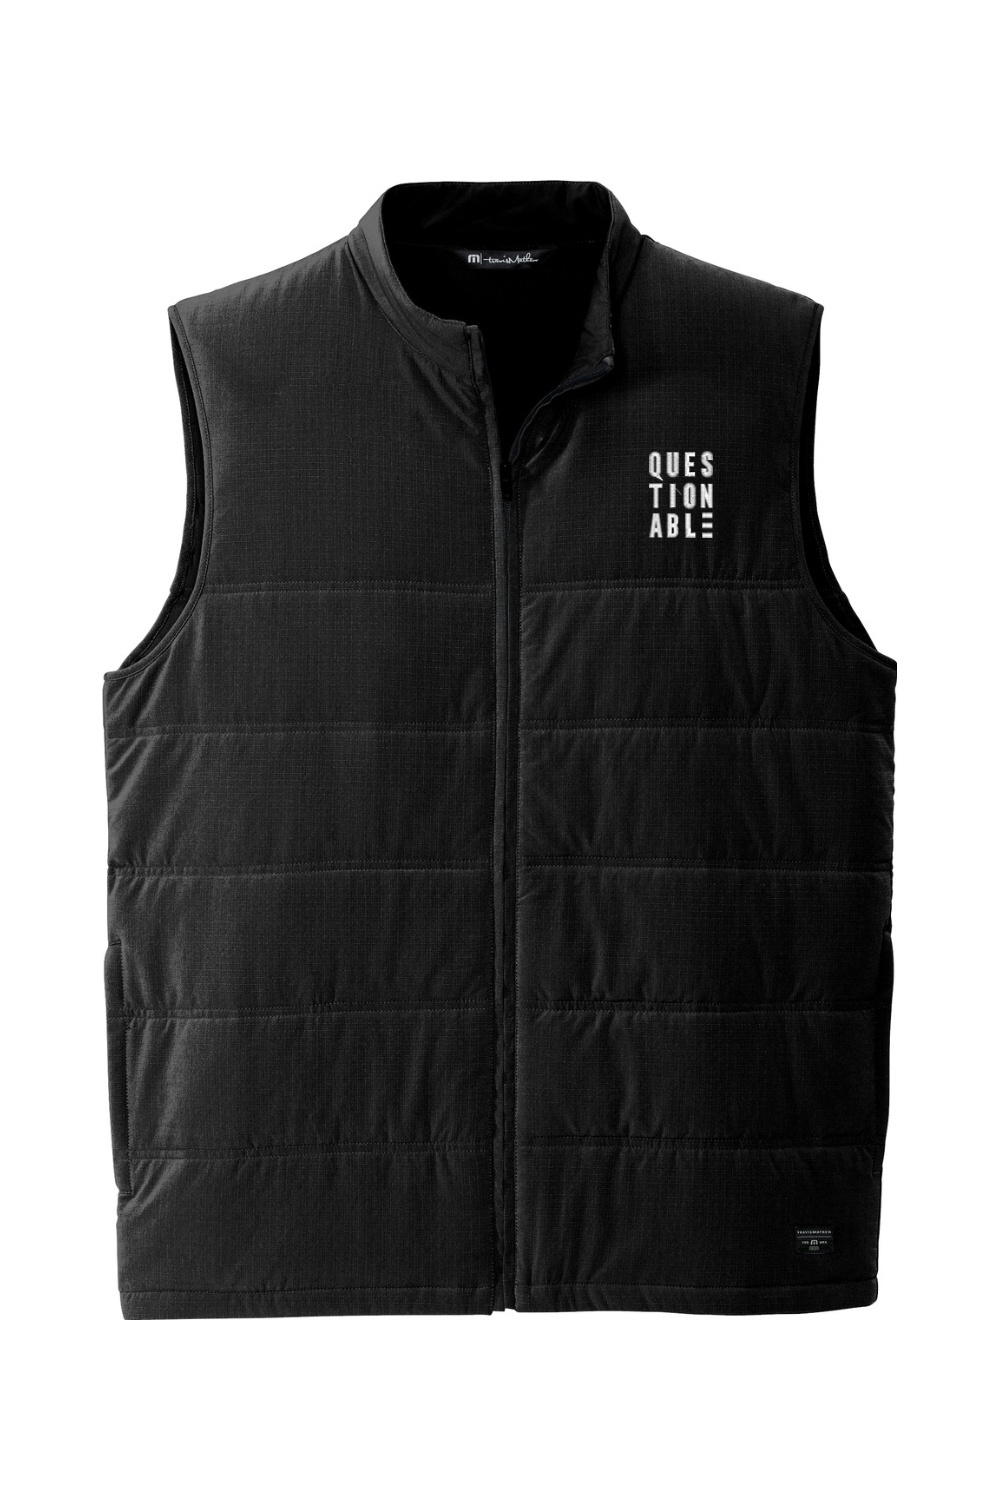 Questionable - TravisMathew Cold Bay Vest